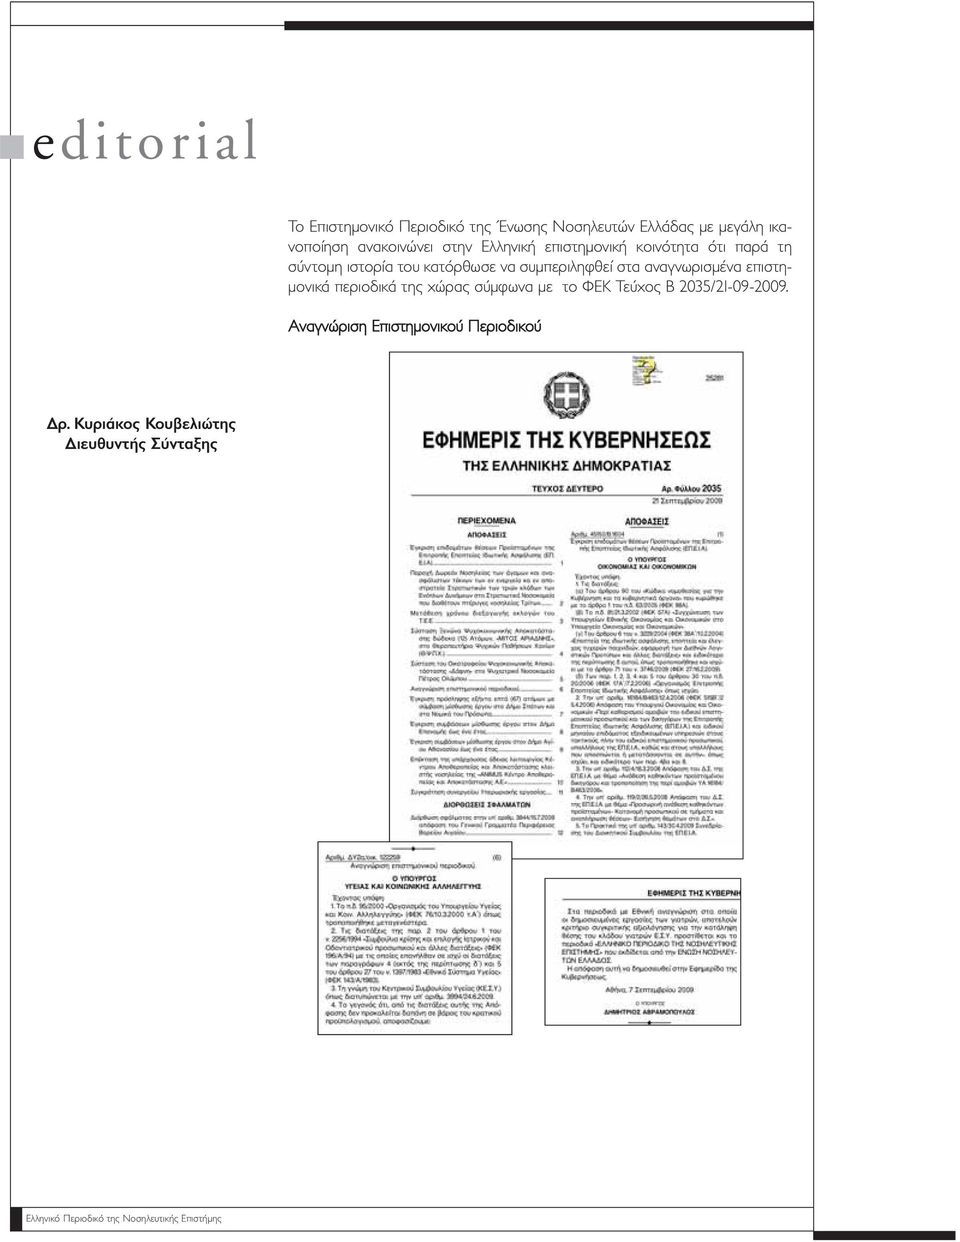 αναγνωρισμένα επιστημονικά περιοδικά της χώρας σύμφωνα με το ΦΕΚ Τεύχος Β 2035/21-09-2009.